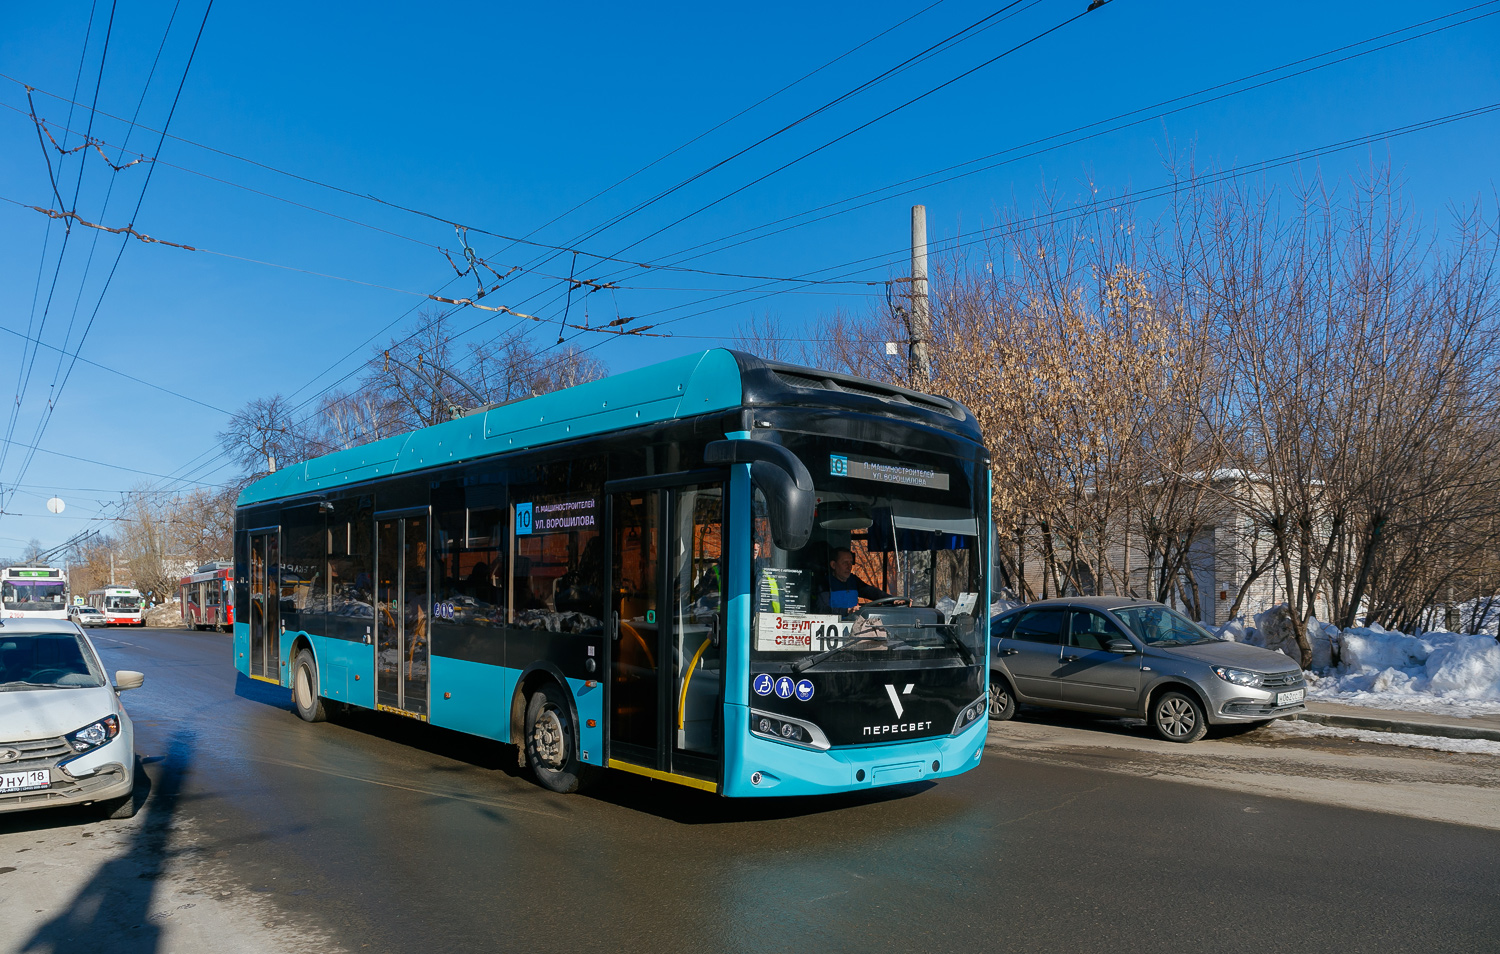 Ижевск, Volgabus-5270T «Пересвет» № 2500; Ижевск — Новые троллейбусы